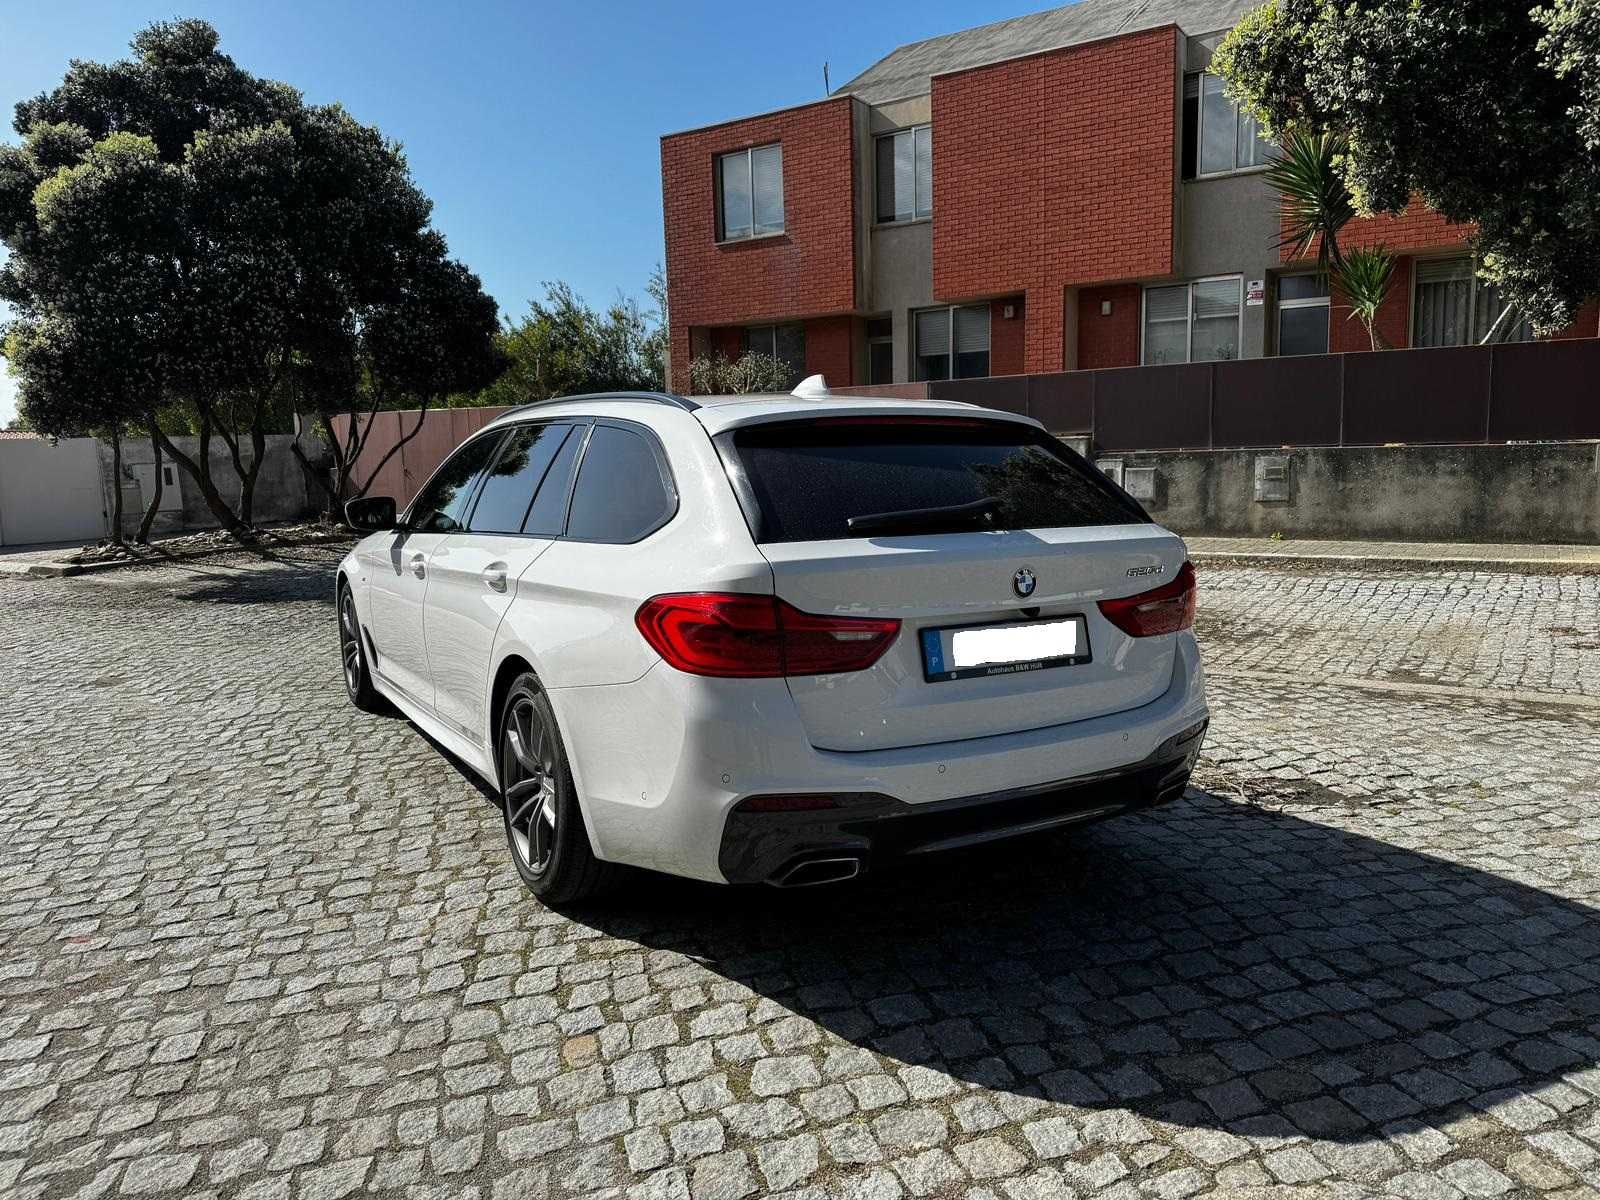 BMW 520 d Pack M Auto